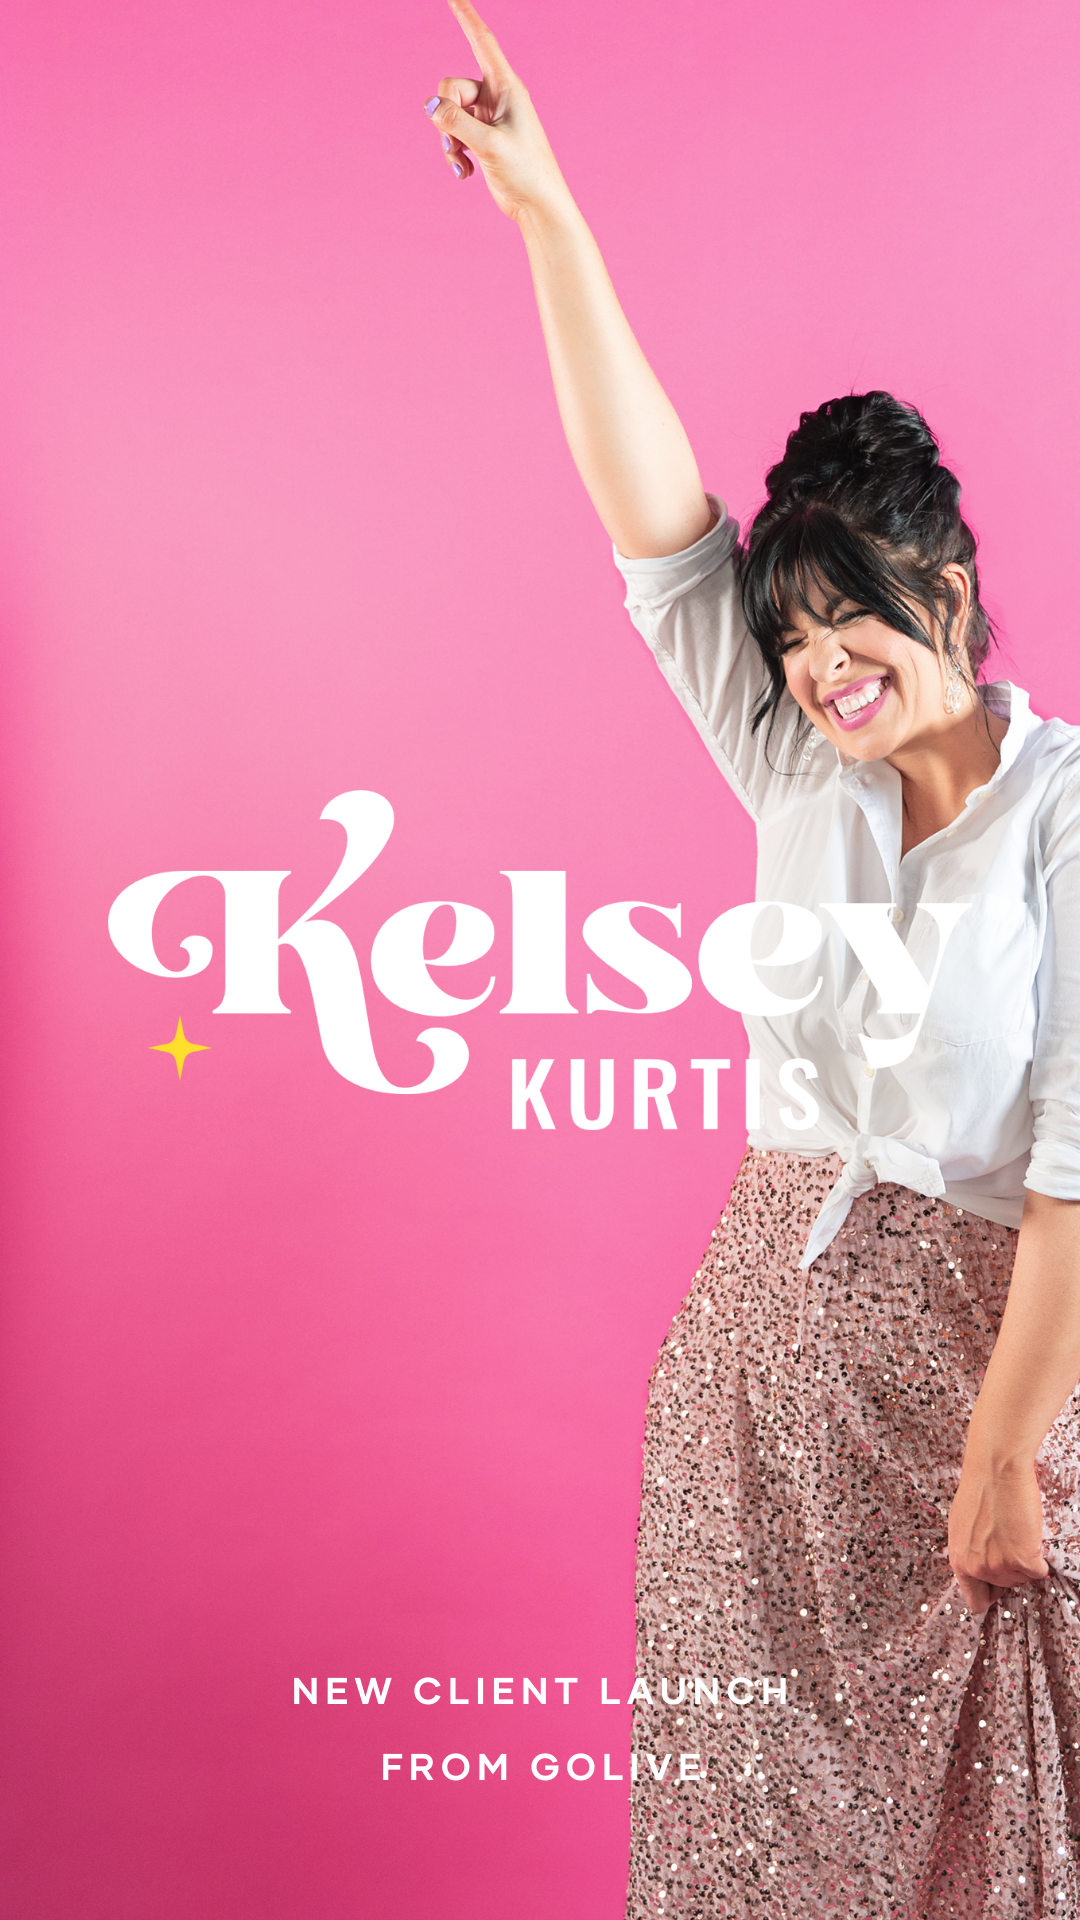 Kelsey Kurtis Logo.png